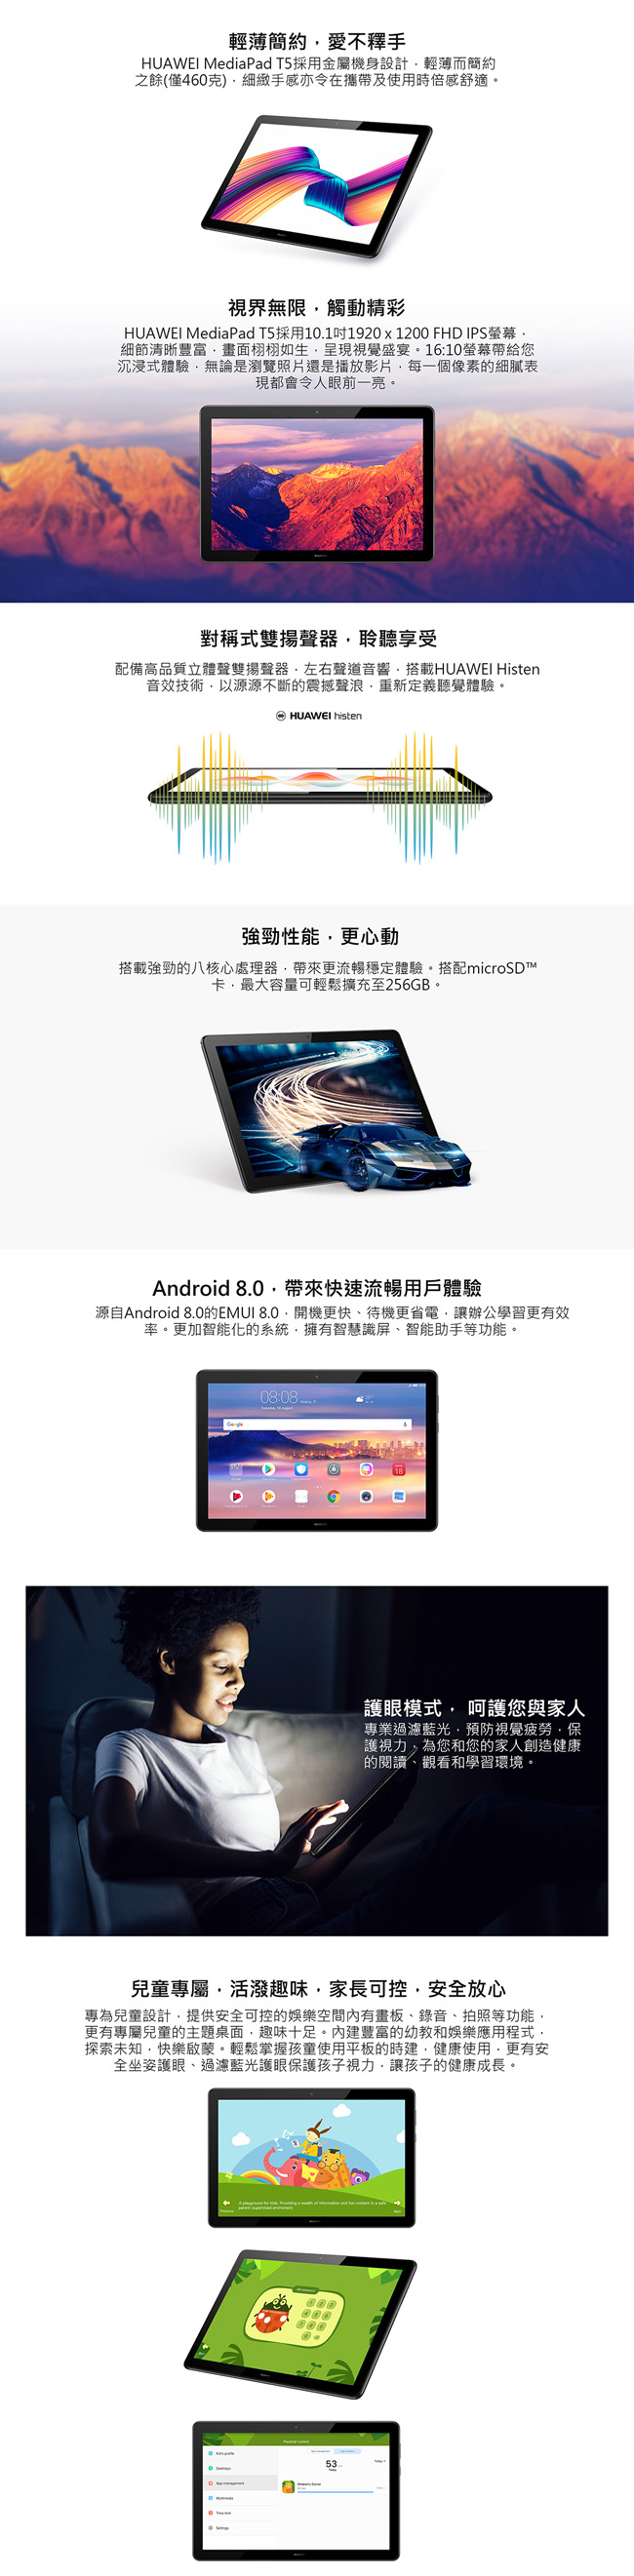 華為 MediaPad T5 10 10.1吋八核心平板 (3G/32G)-黑色